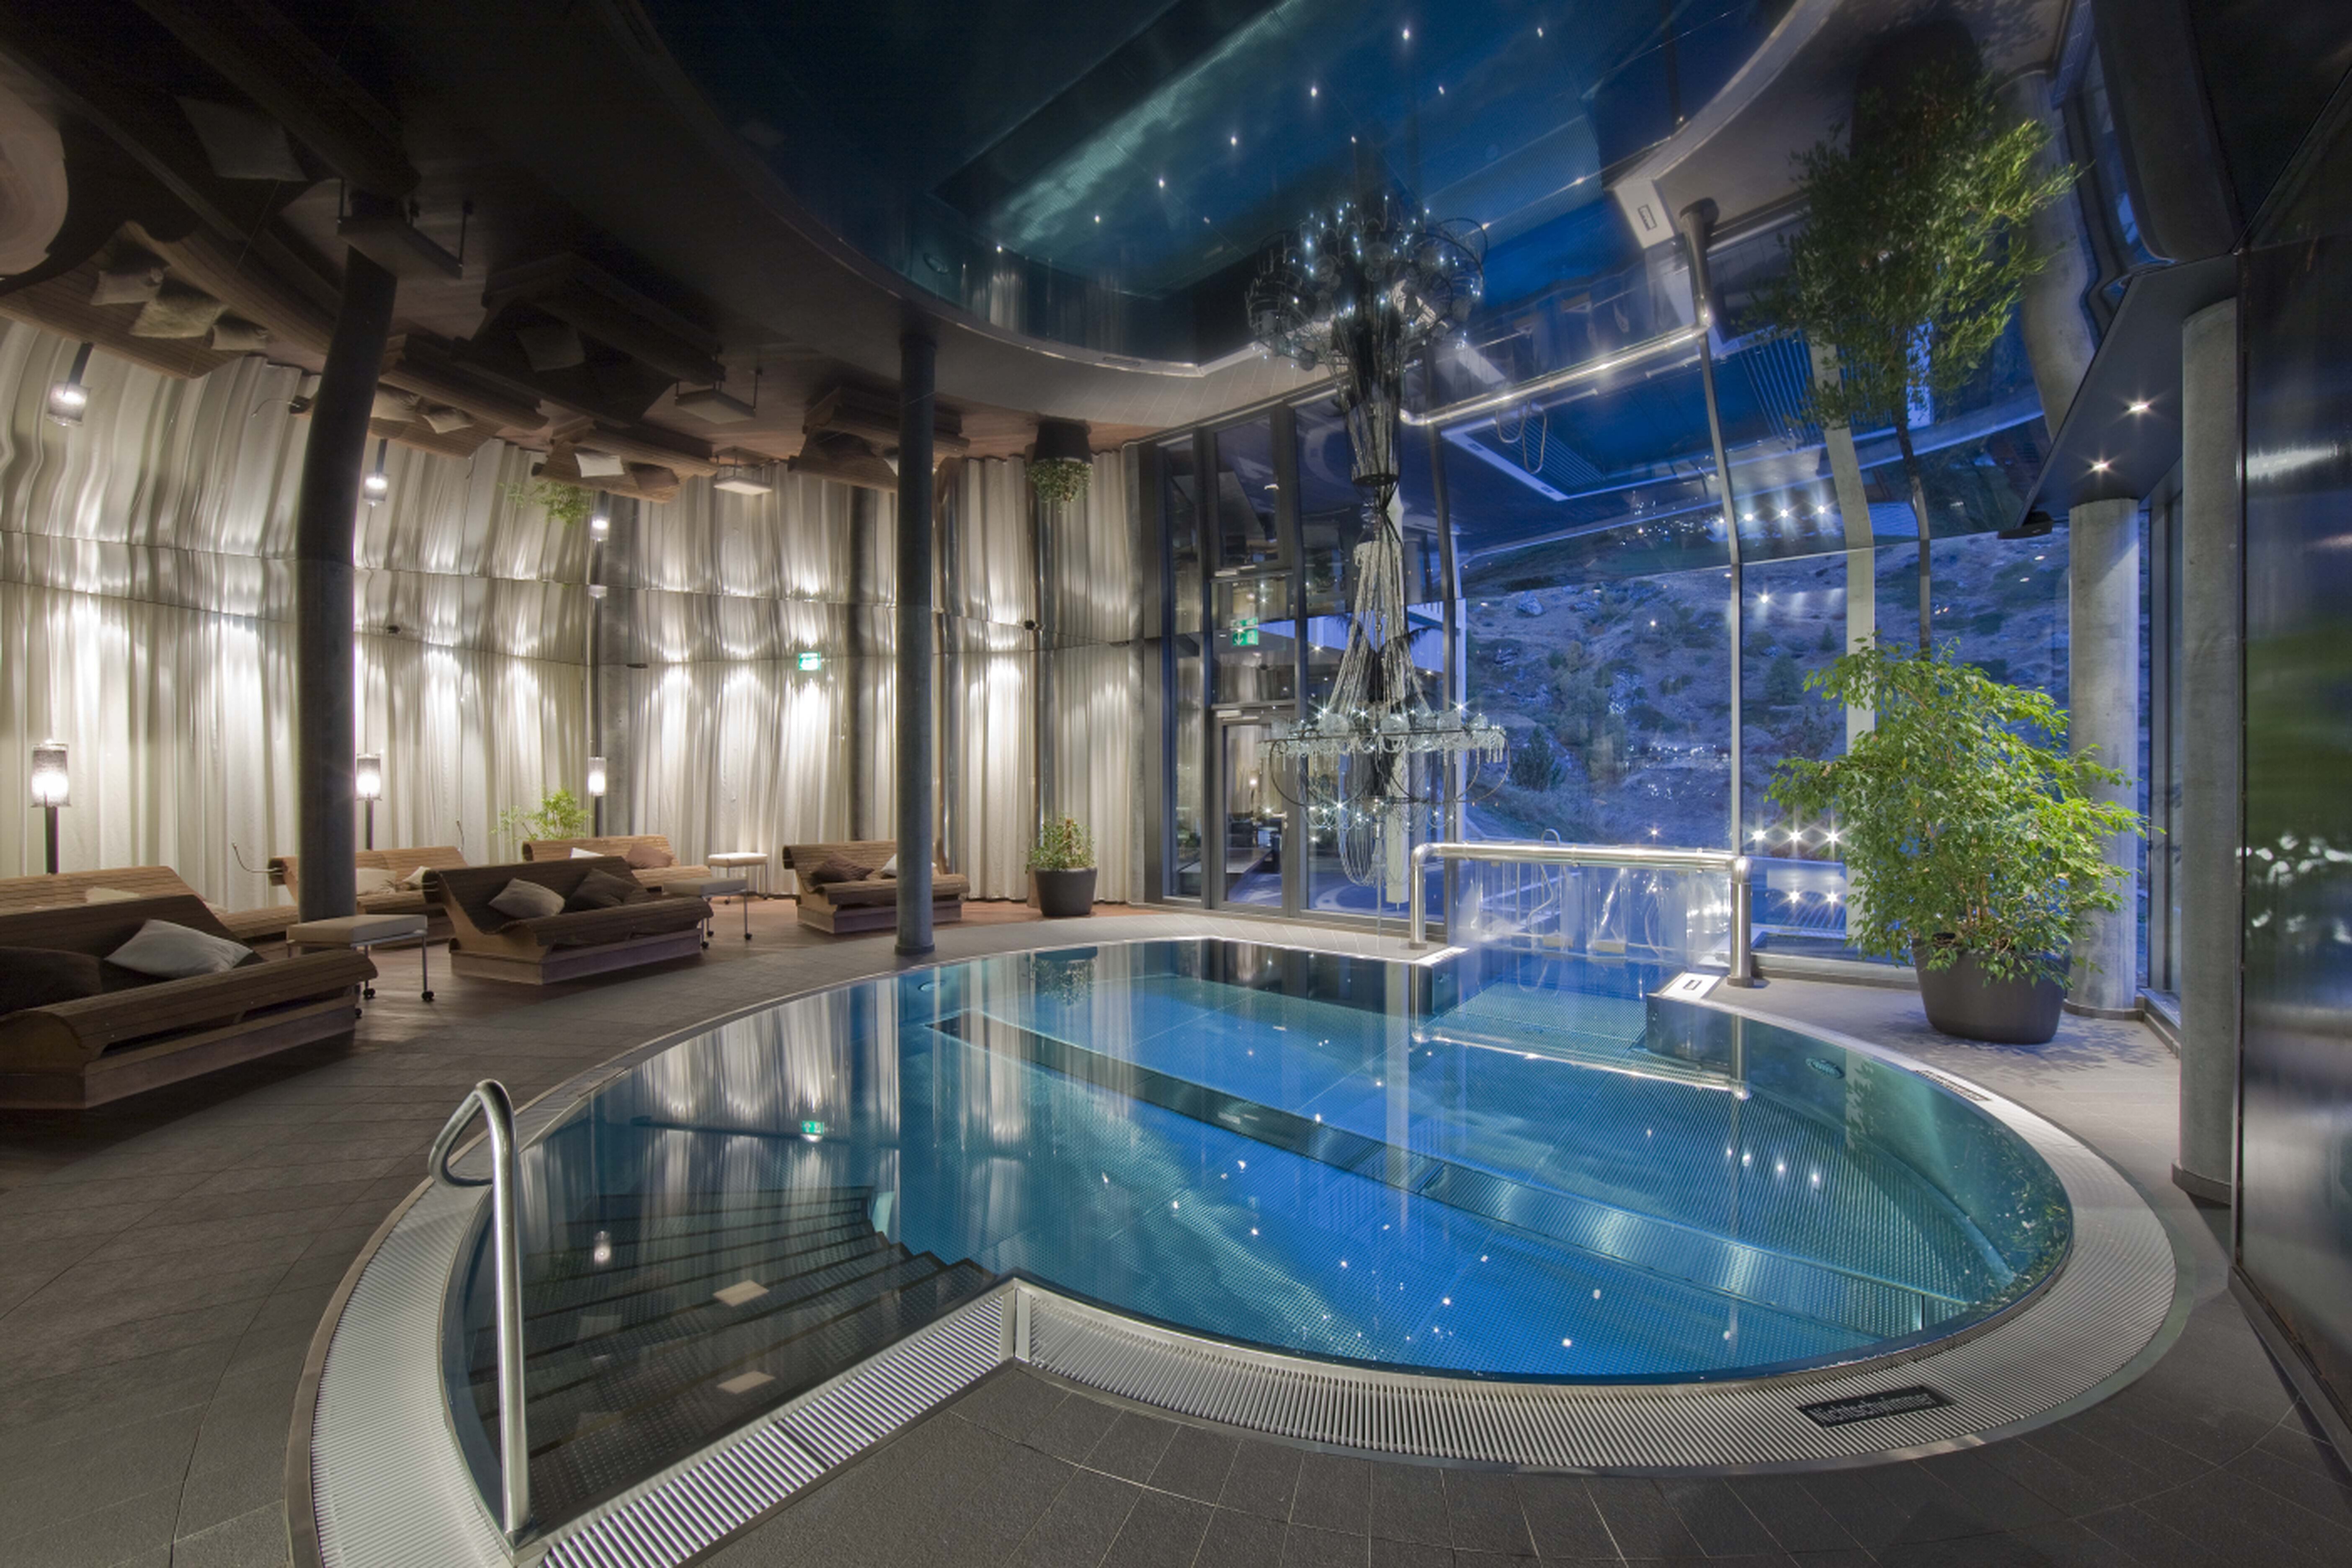 Спа центр телефон. Церматт Горнерграт отель 3* с джакузи. Hotel Matterhorn Focus в Церматт. Красивый бассейн в доме. Закрытый бассейн.